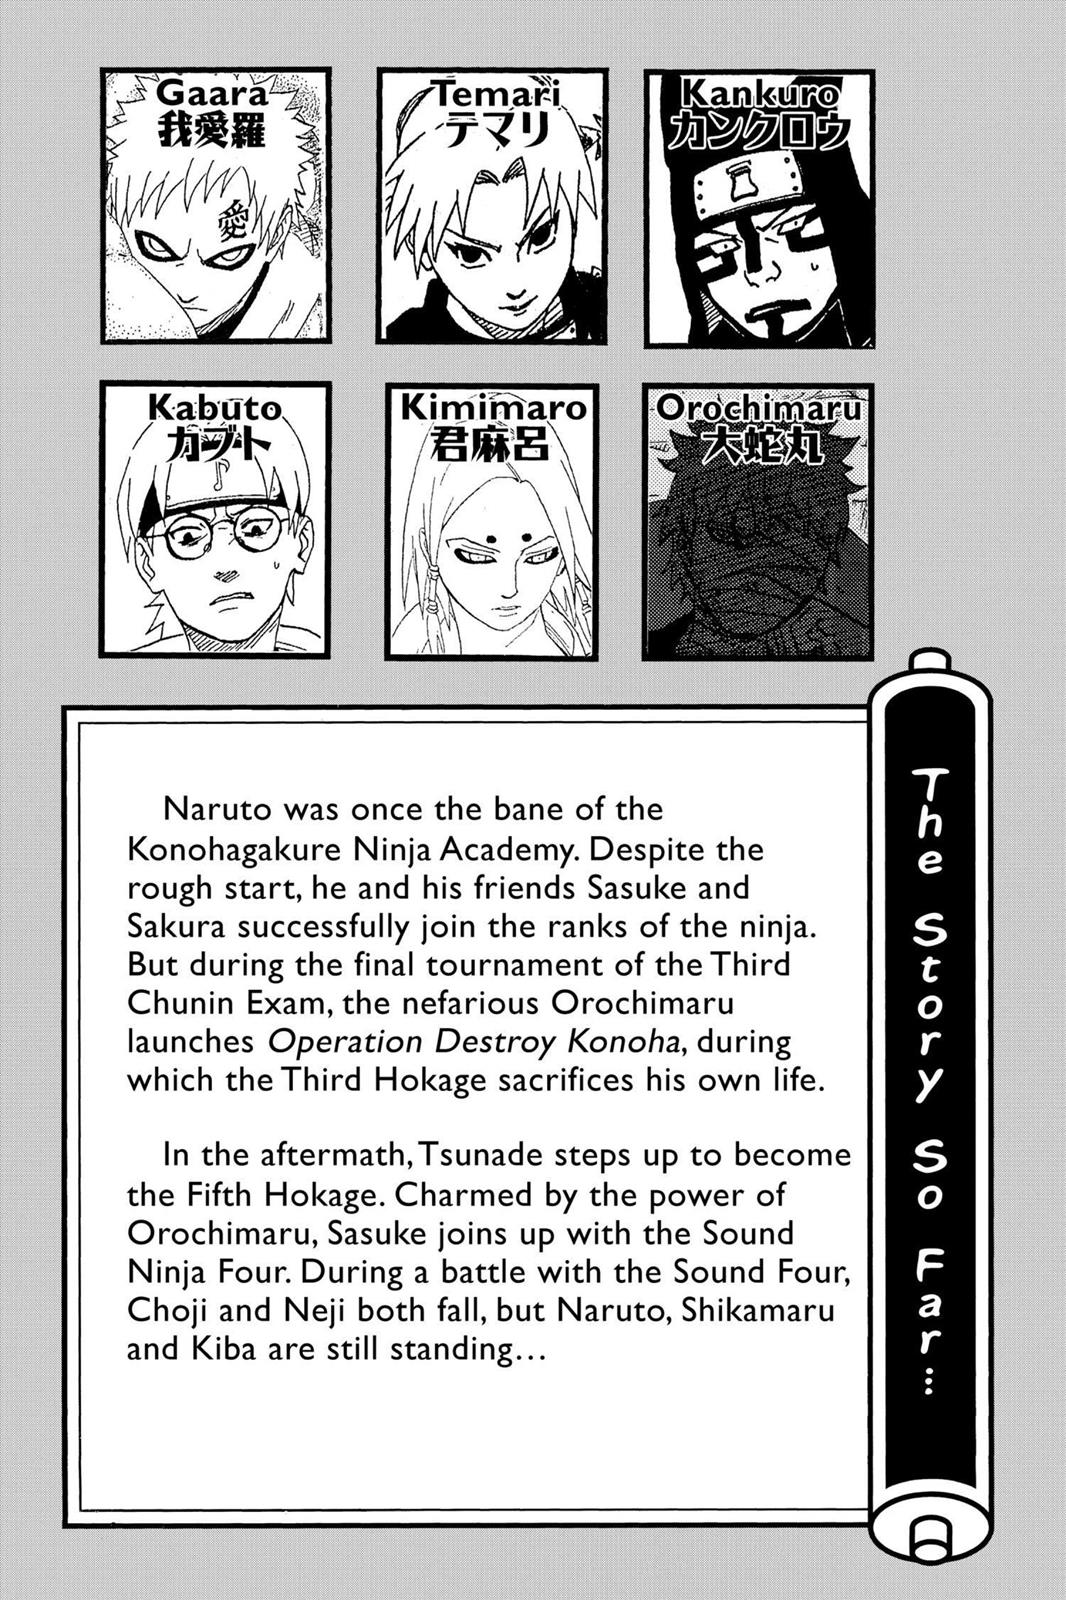 Naruto, Chapter 209 - Naruto Shippuden Manga Online